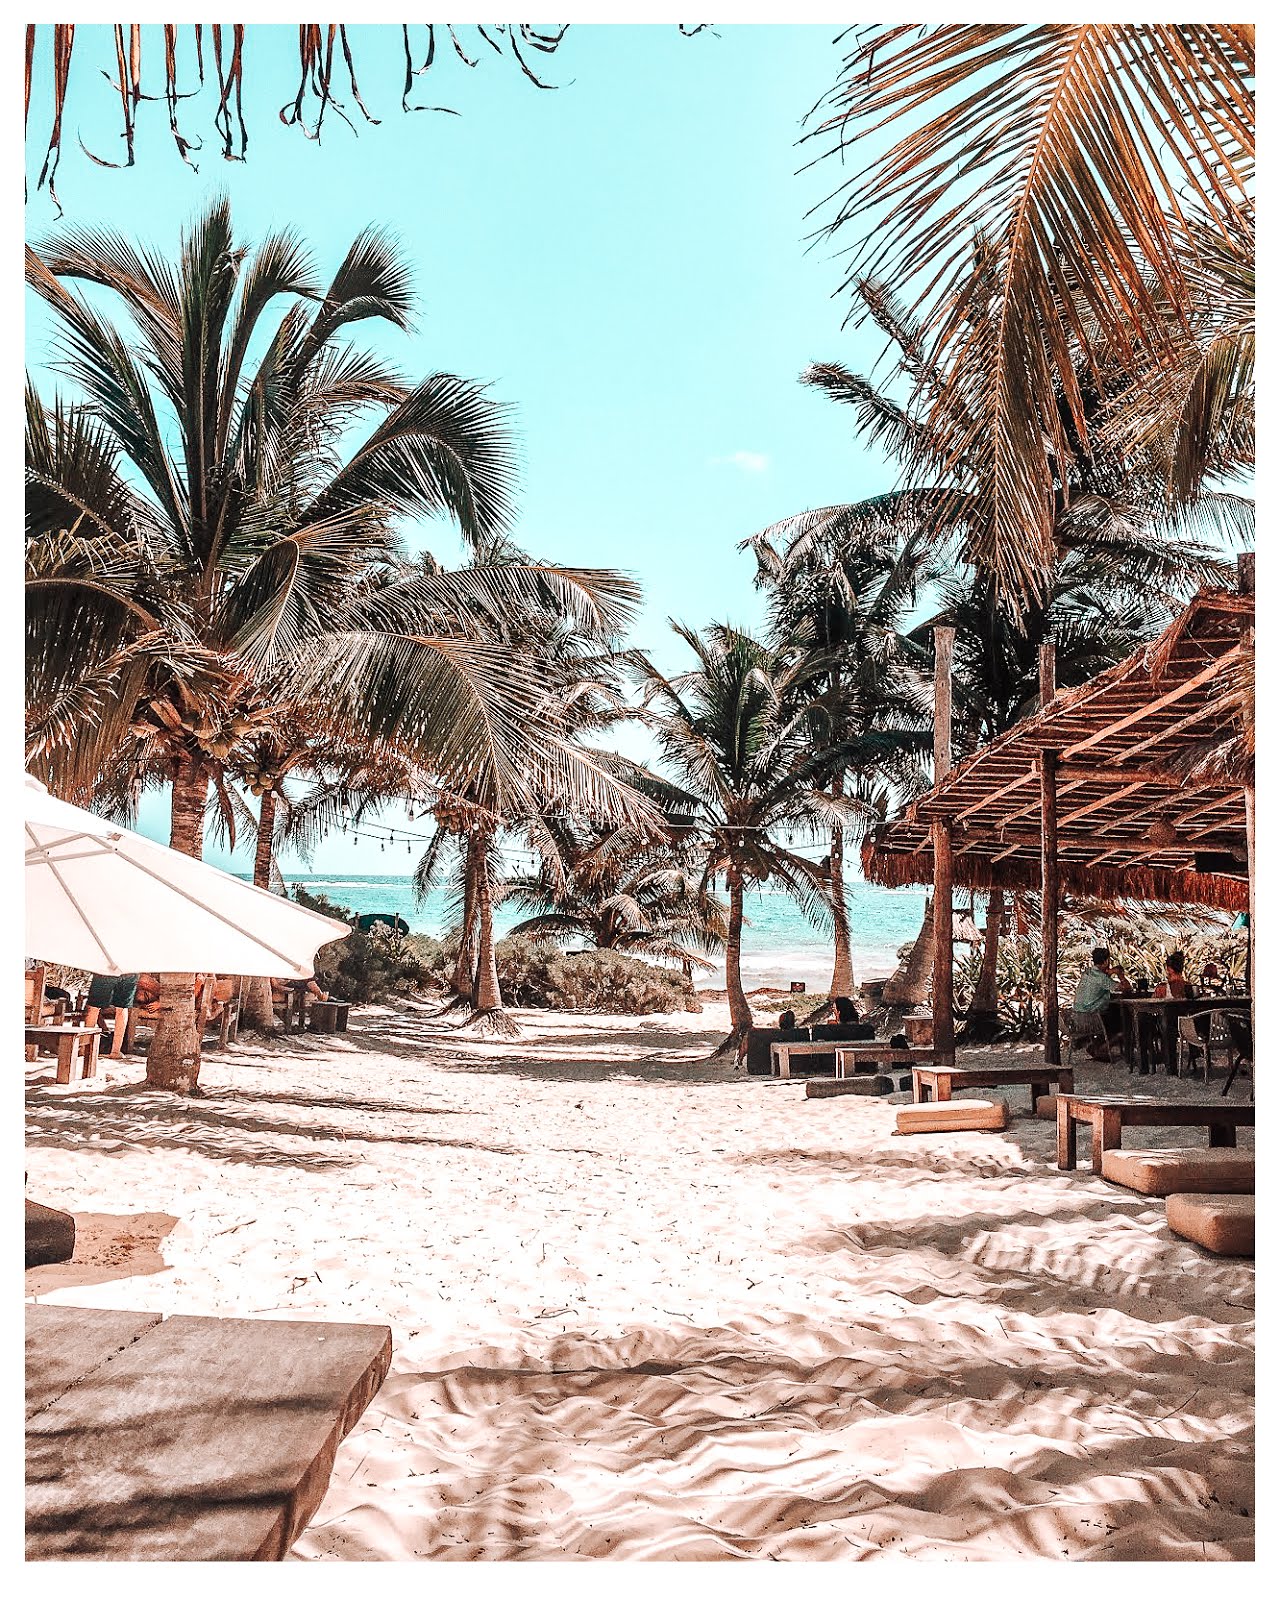 du sable blanc fin au premier plan et des palmiers au fond avec l'eau turquoise de la plage de tulum face à la mer dans le sable sont disposés des tables en bois avec des morceaux de troncs pour s'asseoir et des gens sont attablés au restaurant agusto à tulum